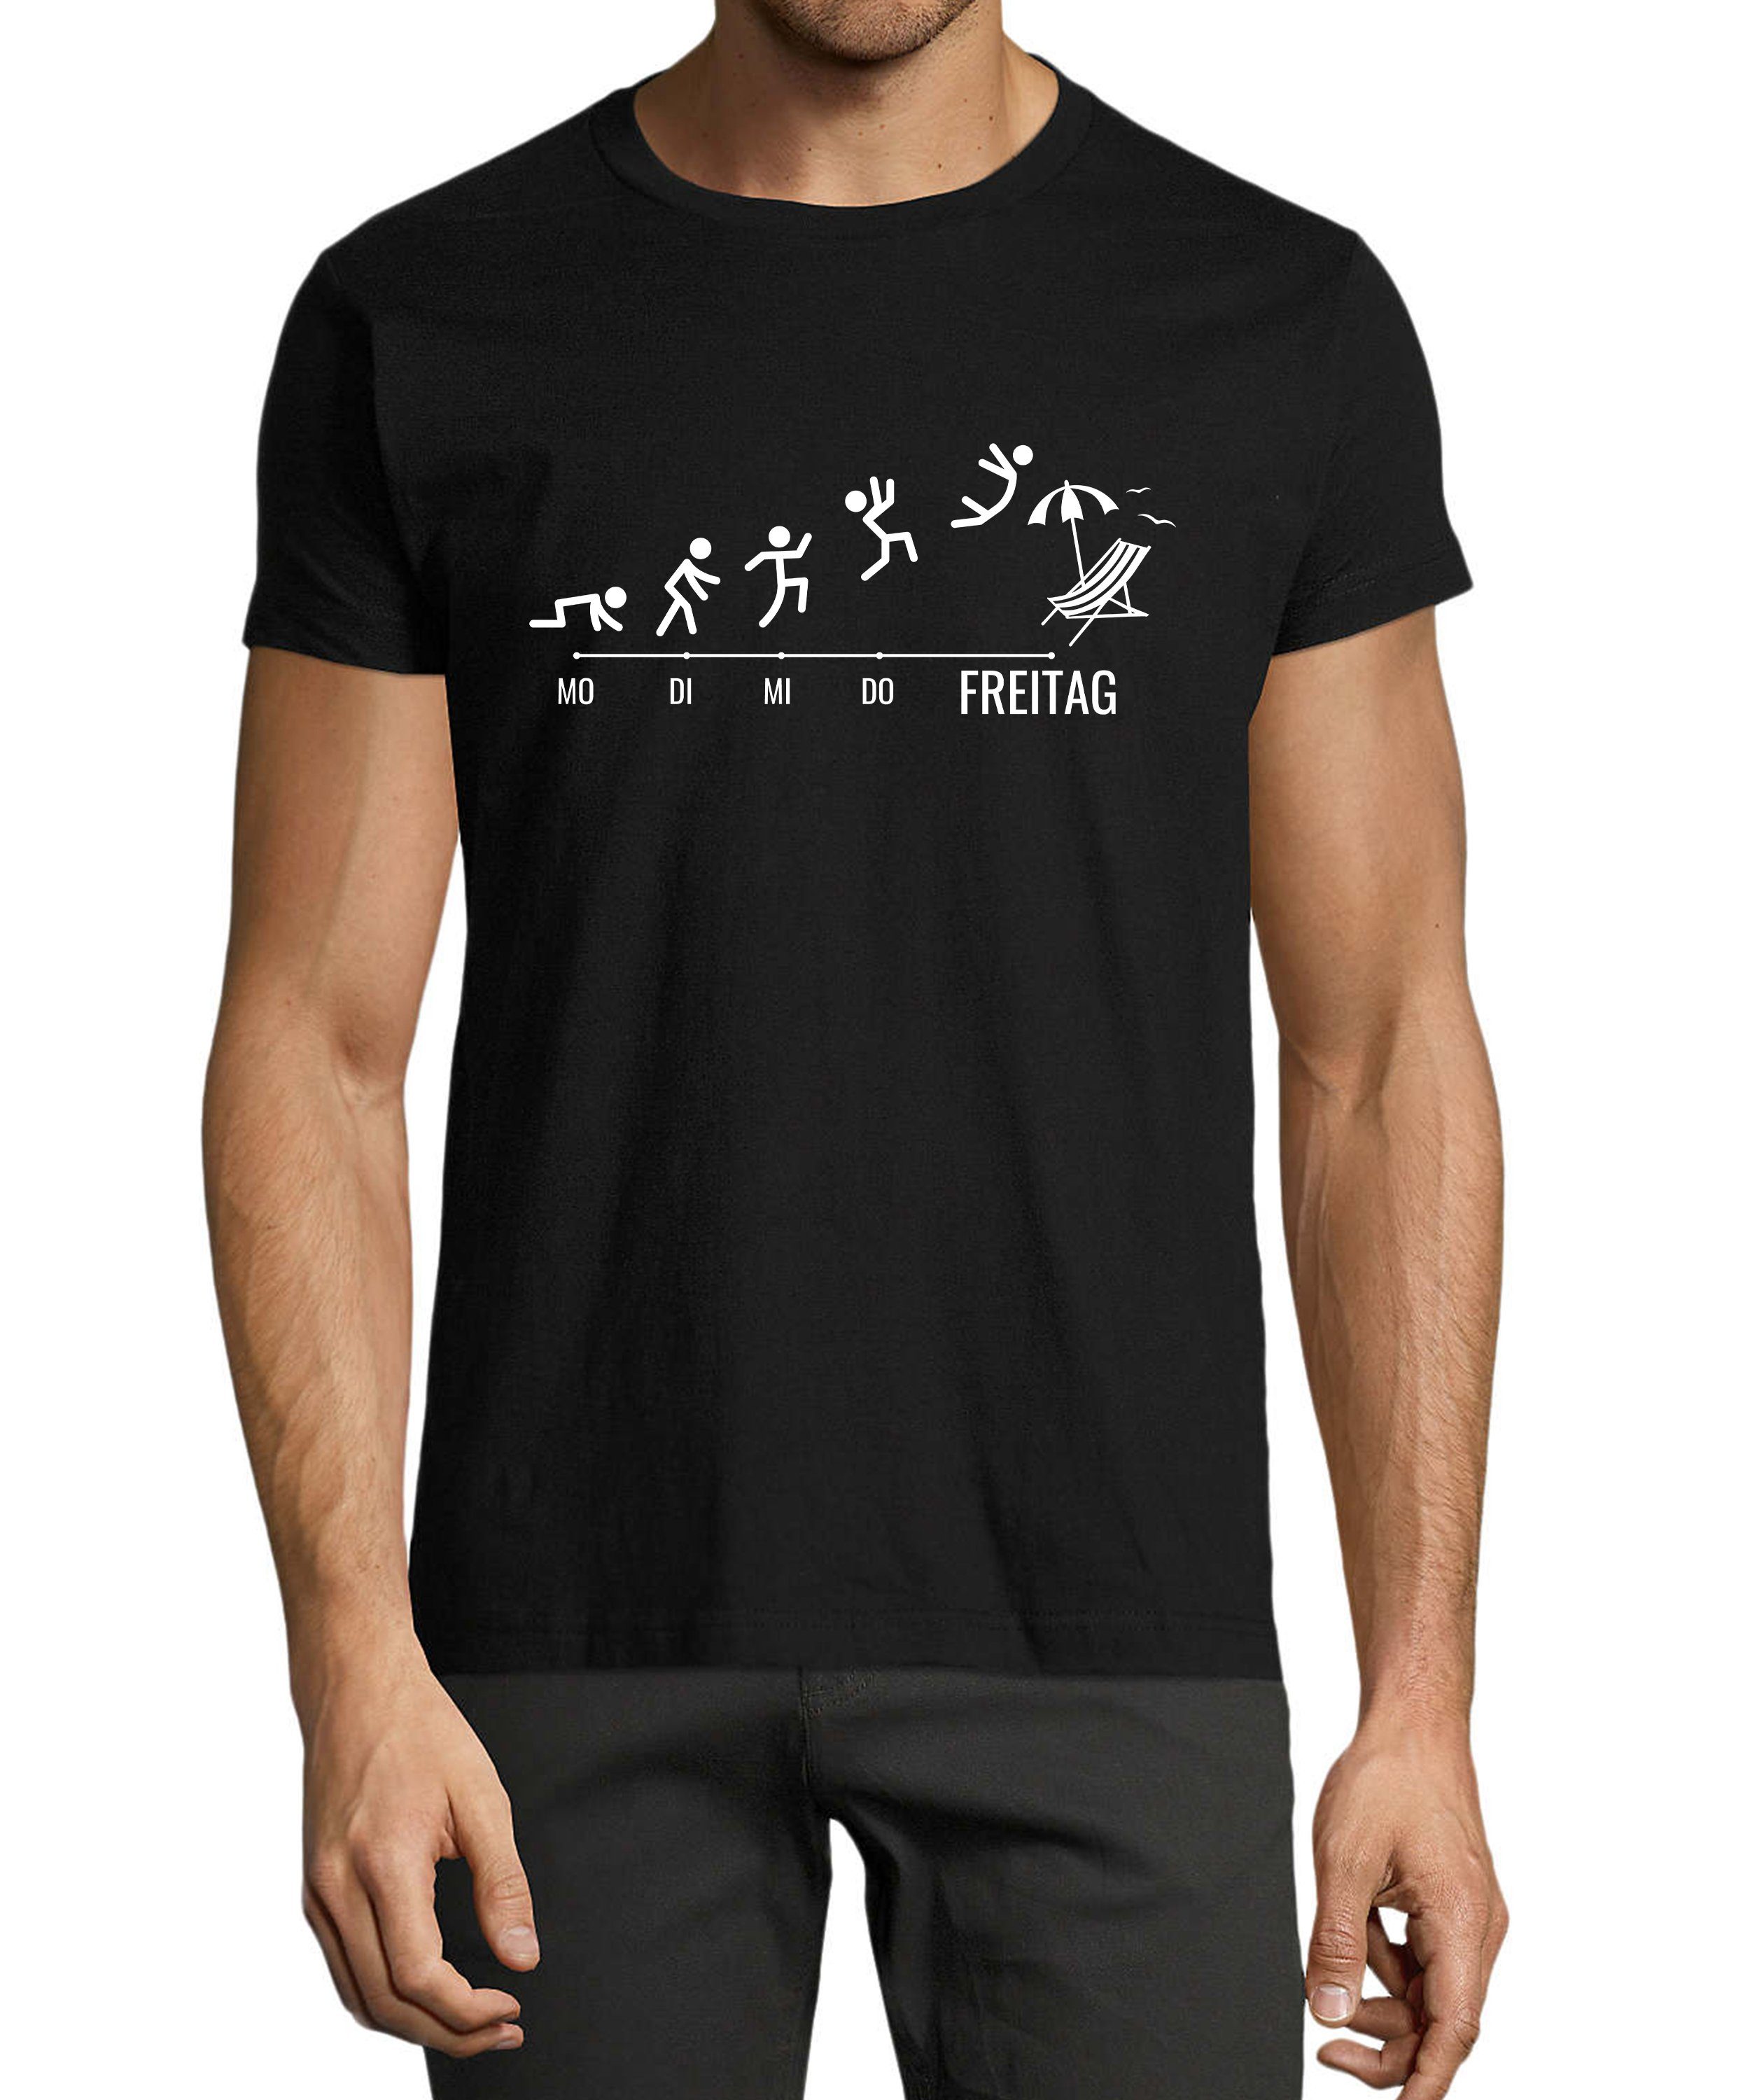 MyDesign24 T-Shirt Herren Fun Print Shirt - Wochentage mit Strichmännchen Baumwollshirt mit Aufdruck Regular Fit, i309 schwarz